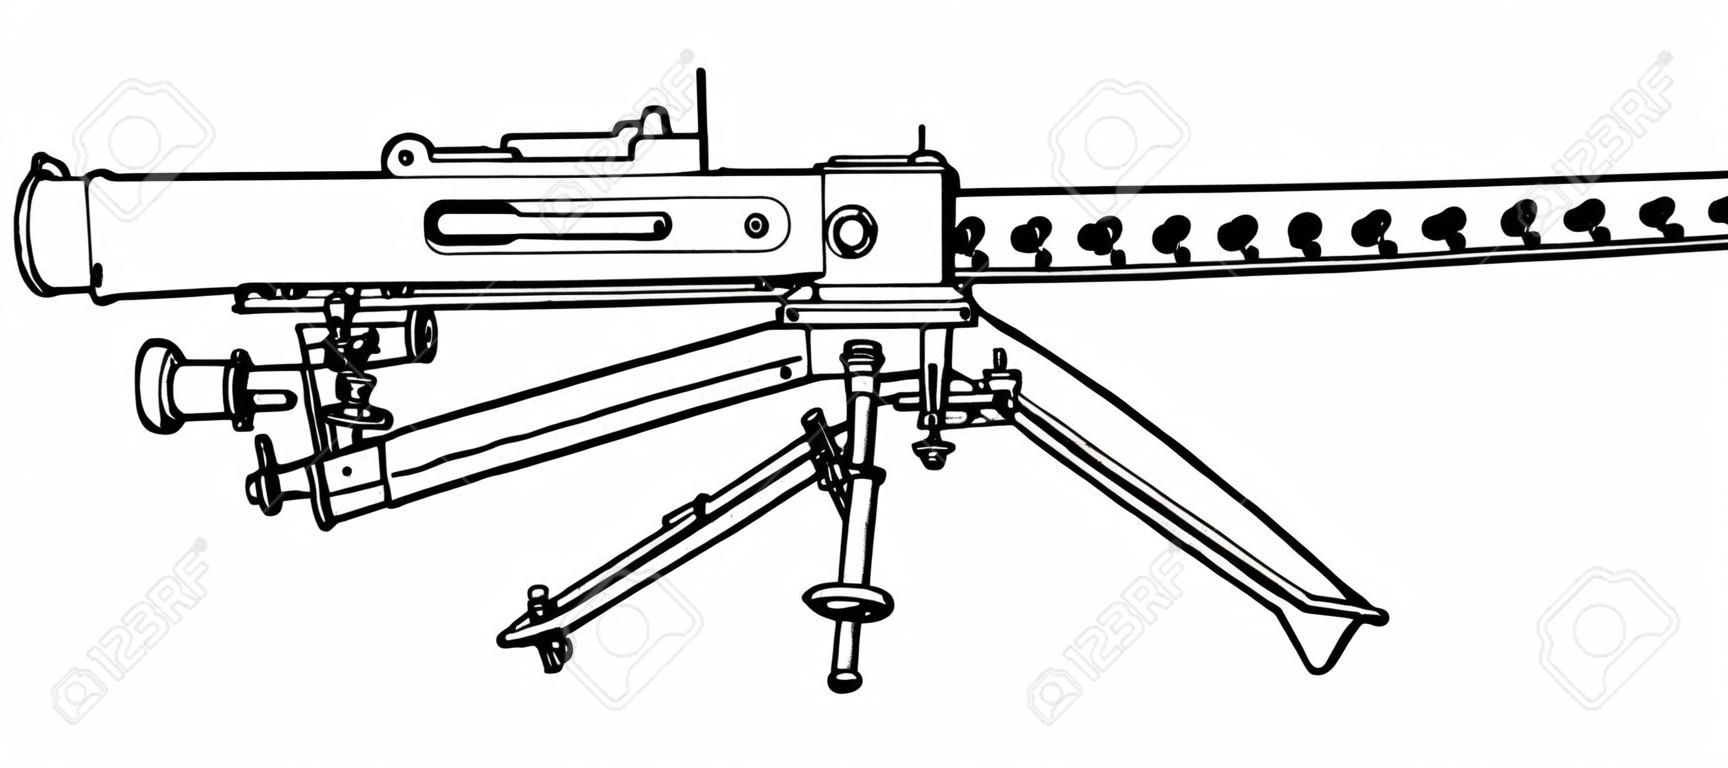 Browning Machine Gun był używany jako lekka piechota, vintage rysowanie linii lub ilustracja grawerowania.